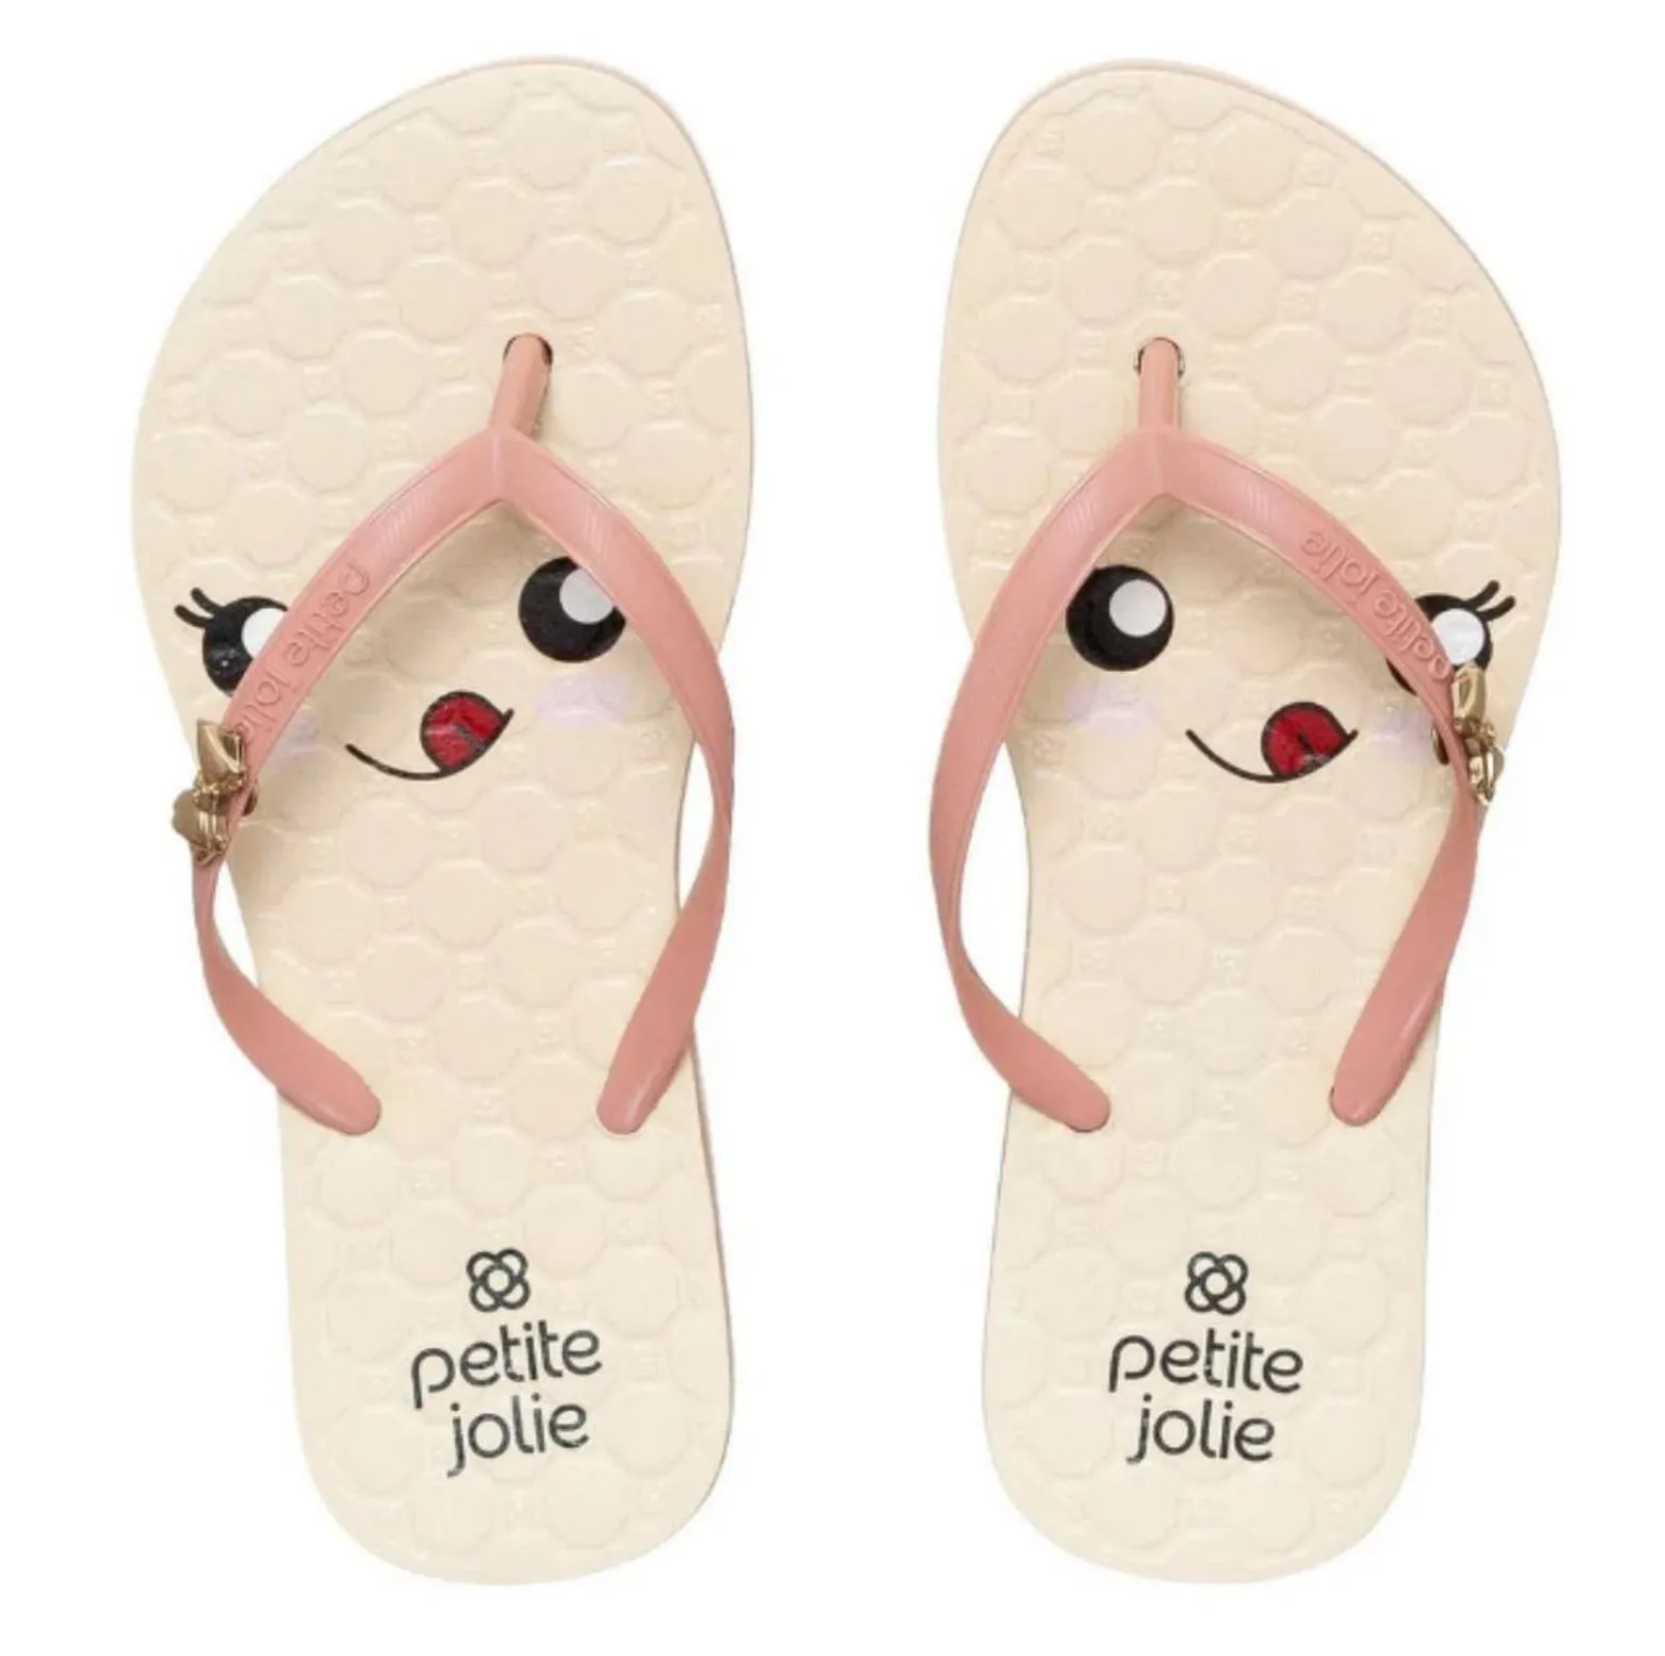 PJ5498IN Recolor Charms Sandals {3 Colors} - Ethan's Closet Children's  Boutique & Little Feet